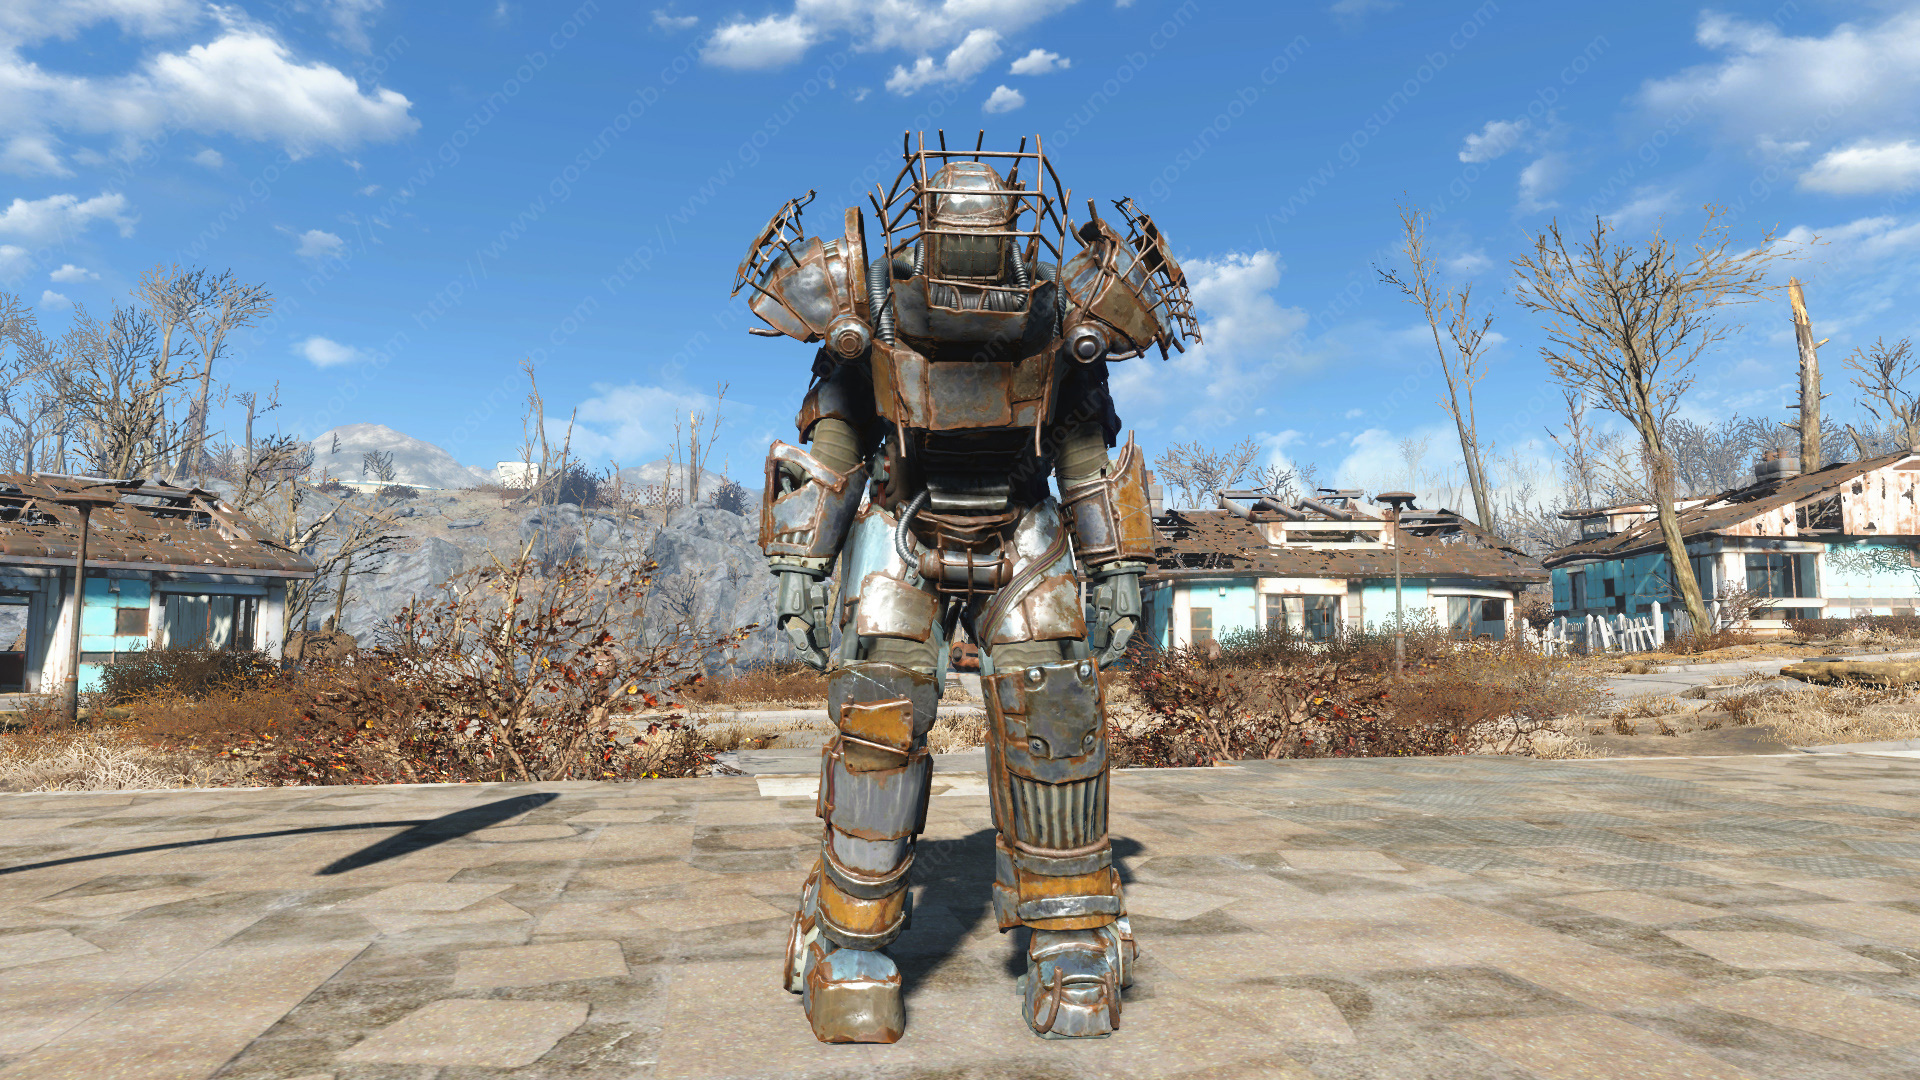 Чит на силовую броню. Фоллаут 4 силовая броня рейдеров. Силовая броня рейдеров Fallout 4. Фоллаут 4 броня рейдеров. Fallout 4 Raider Armor.